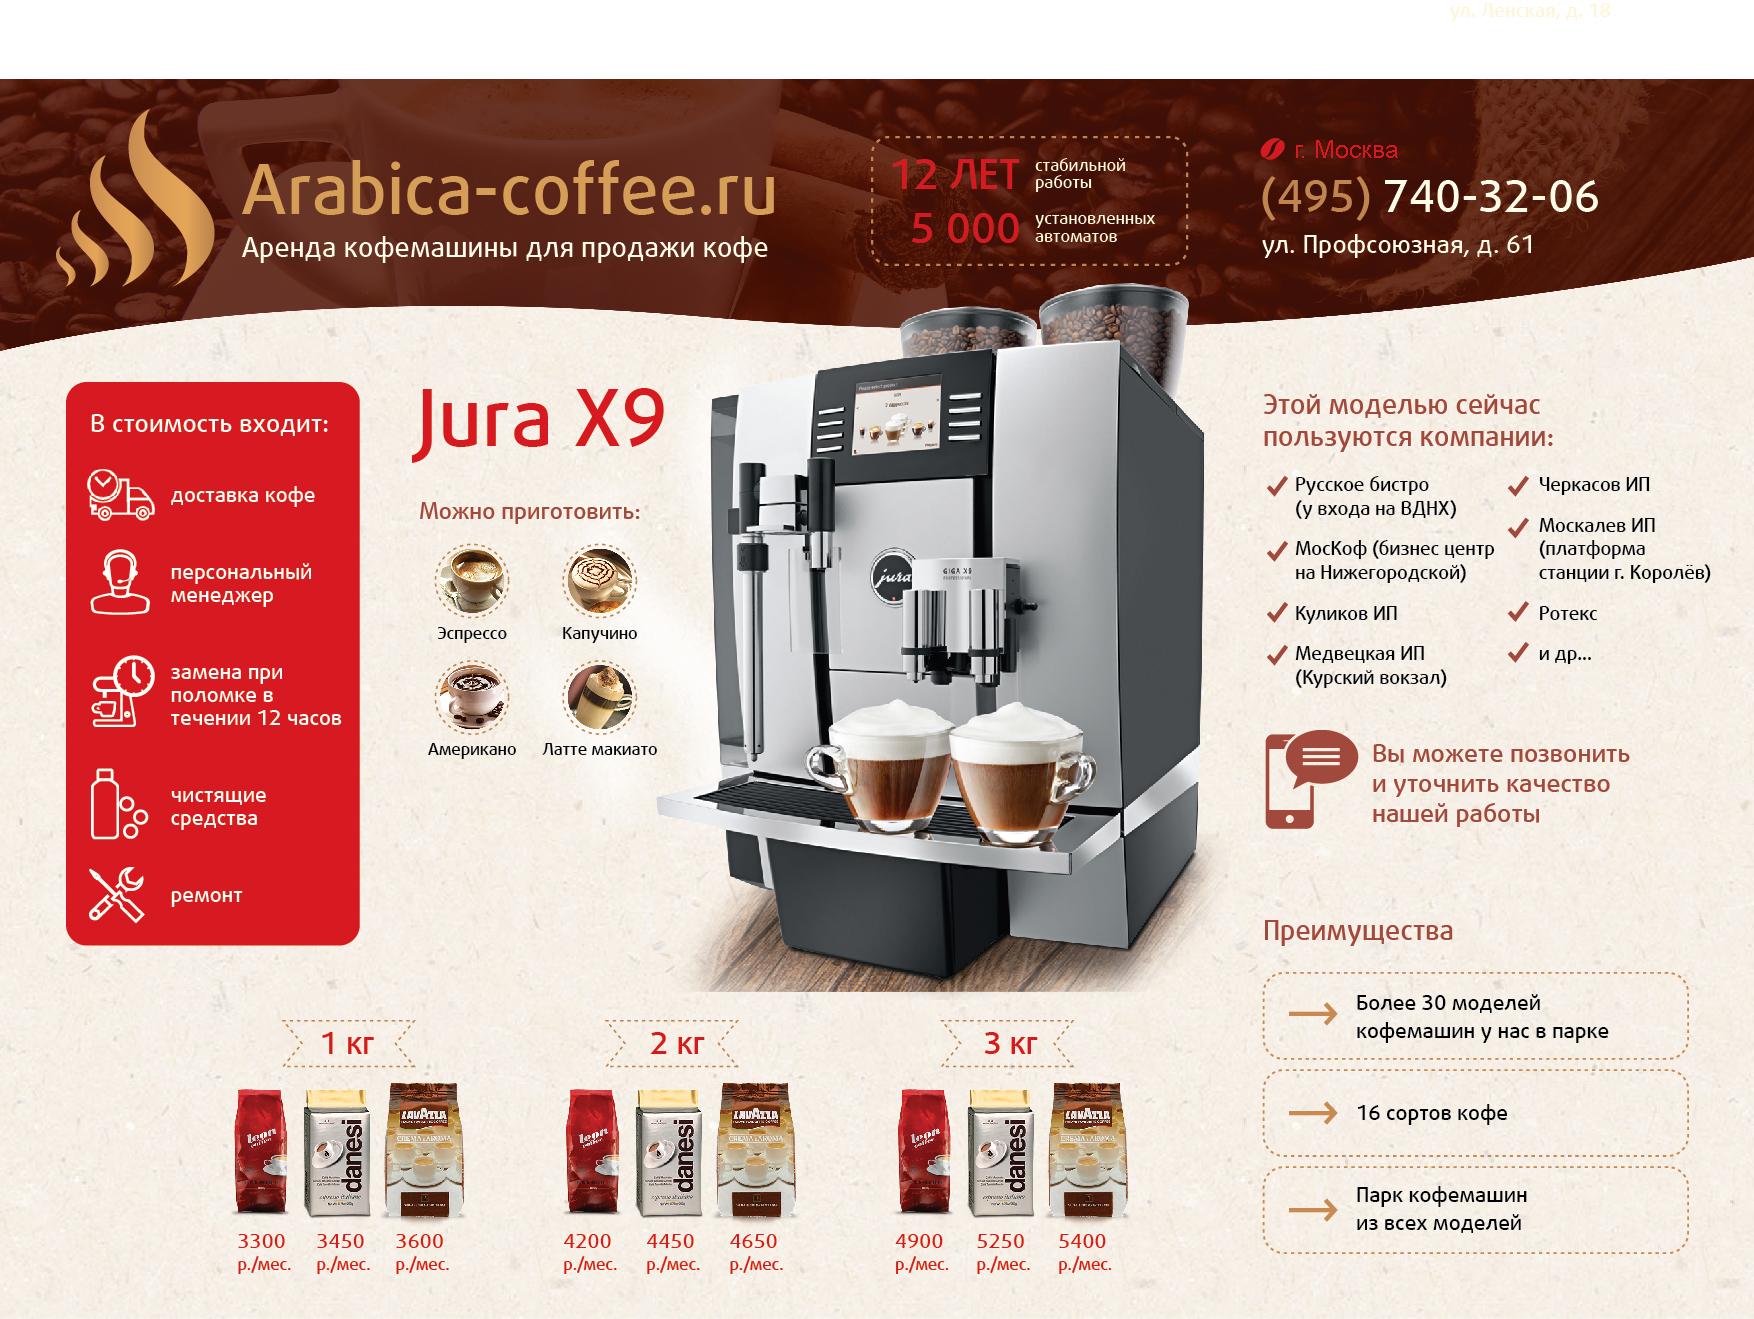 Какой кофе лучше покупать для кофемашины. Кофе Арабика для кофемашины. Кофе из кофемашины. Реклама кофе из кофемашины. Кофемашины для продажи кофе.